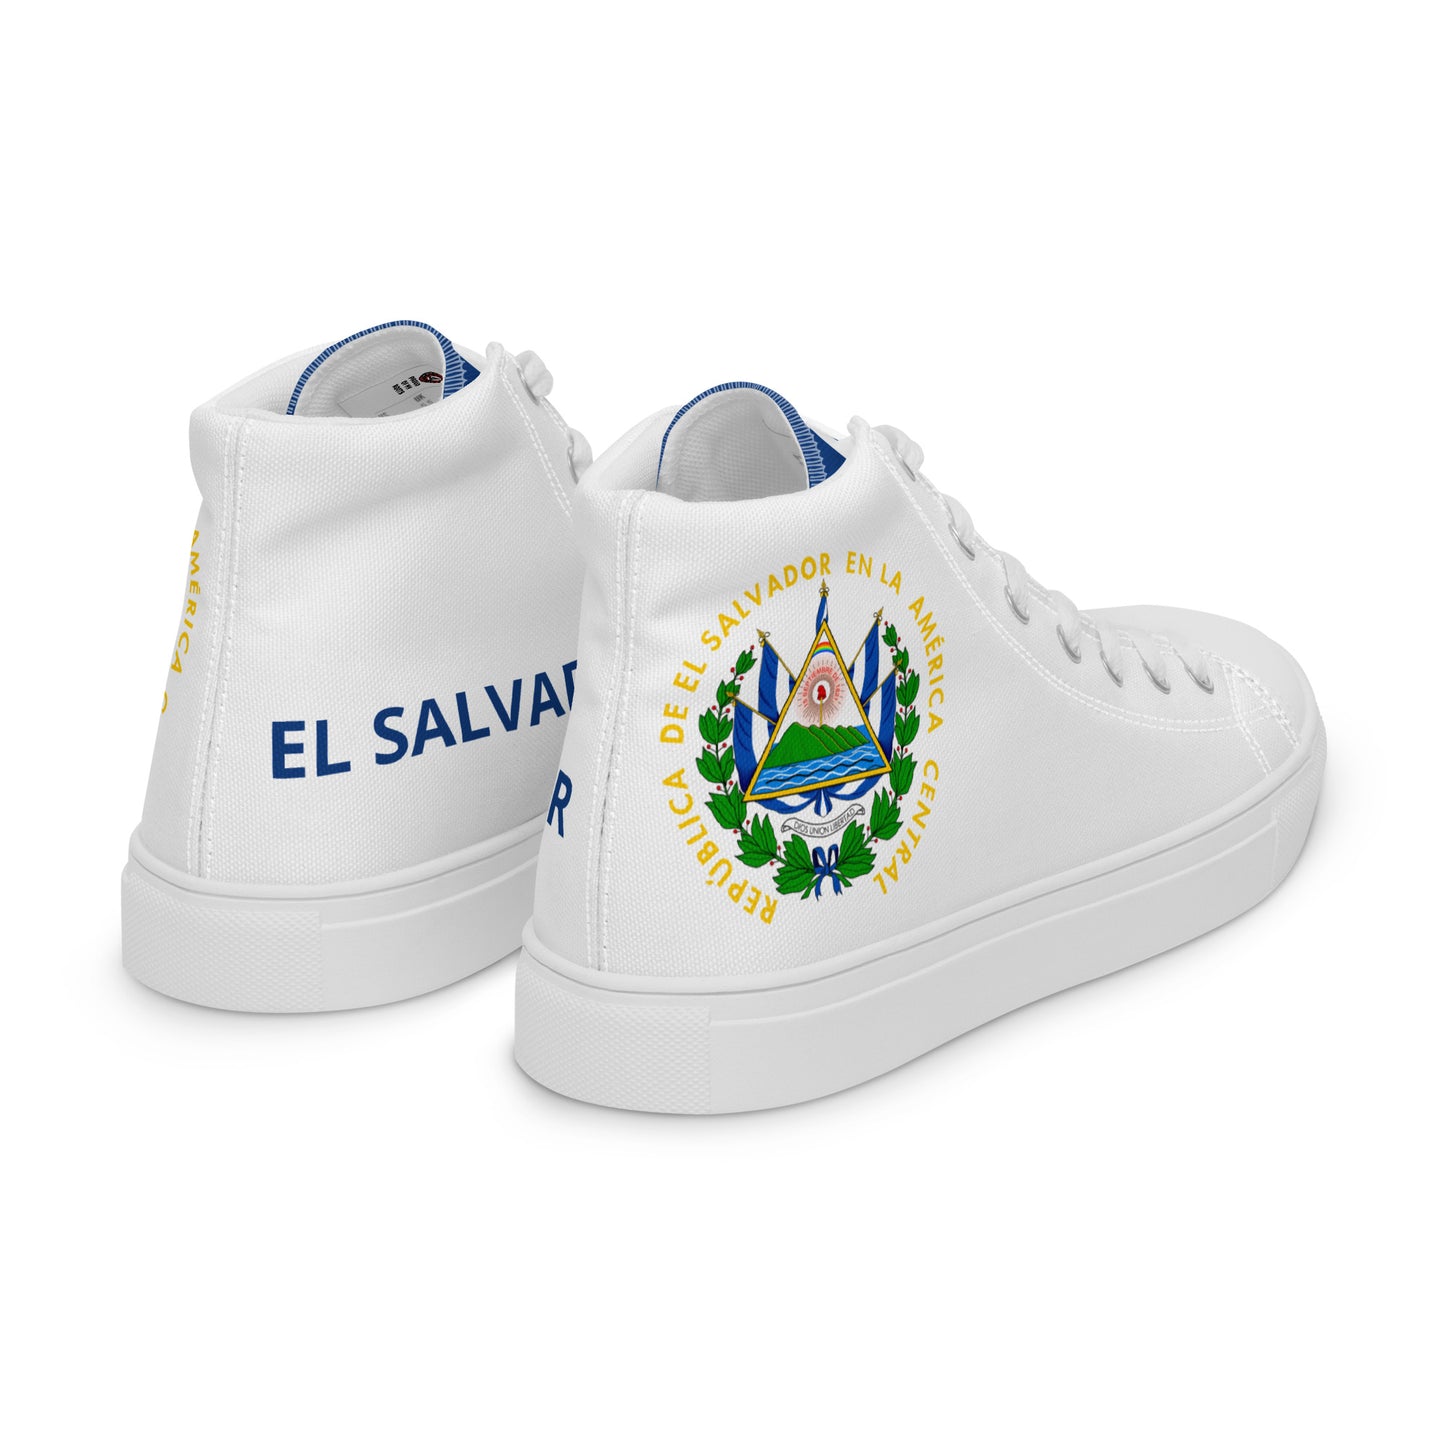 El Salvador - Men - White - High top shoes